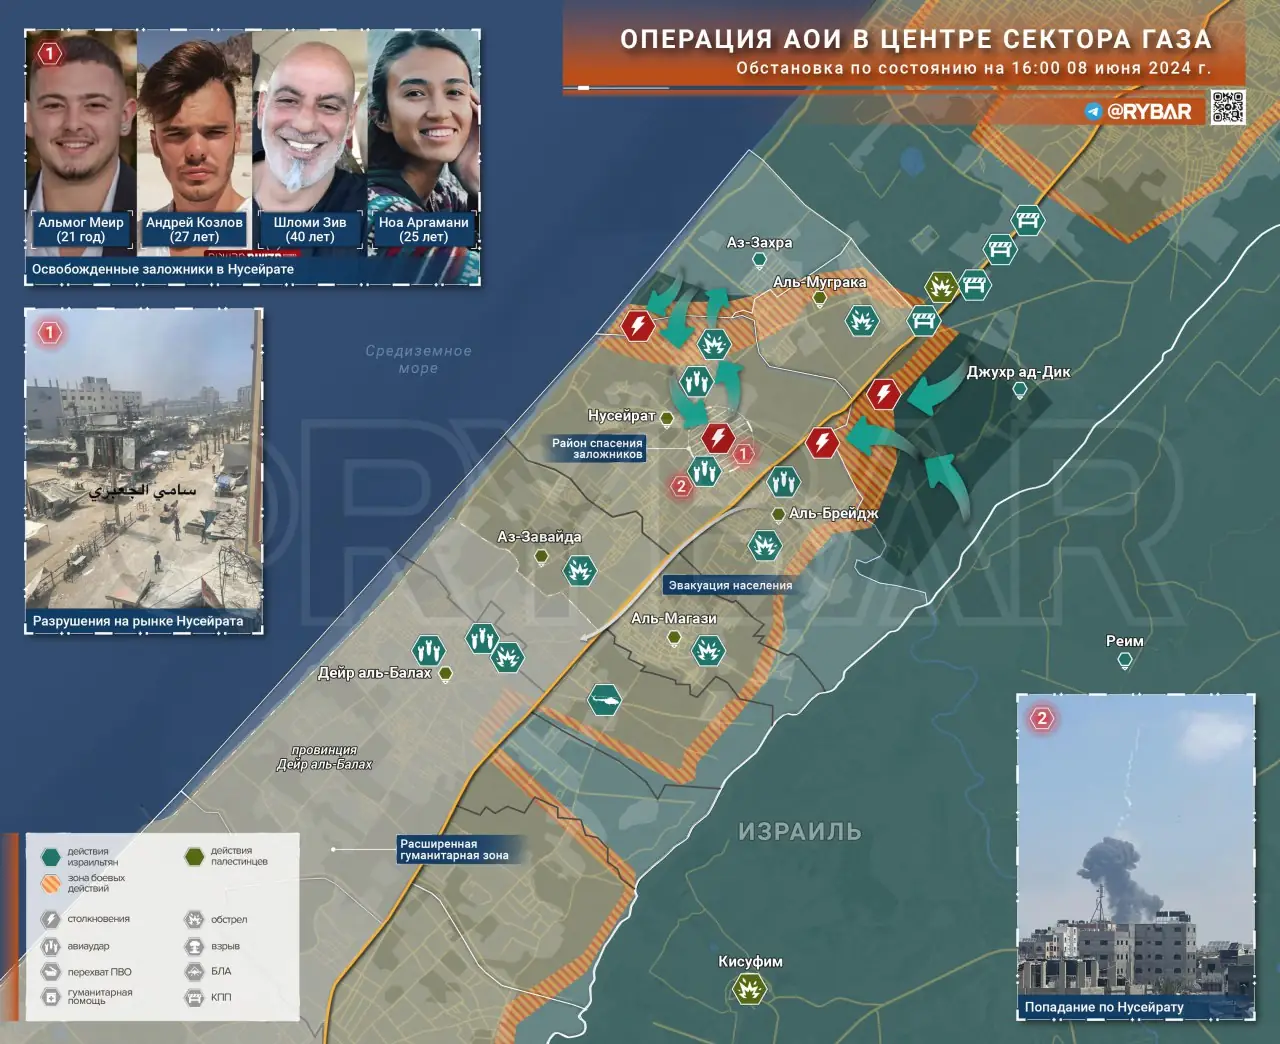 Операция АОИ в центре сектора Газа: освобождение заложников в Нусейрате